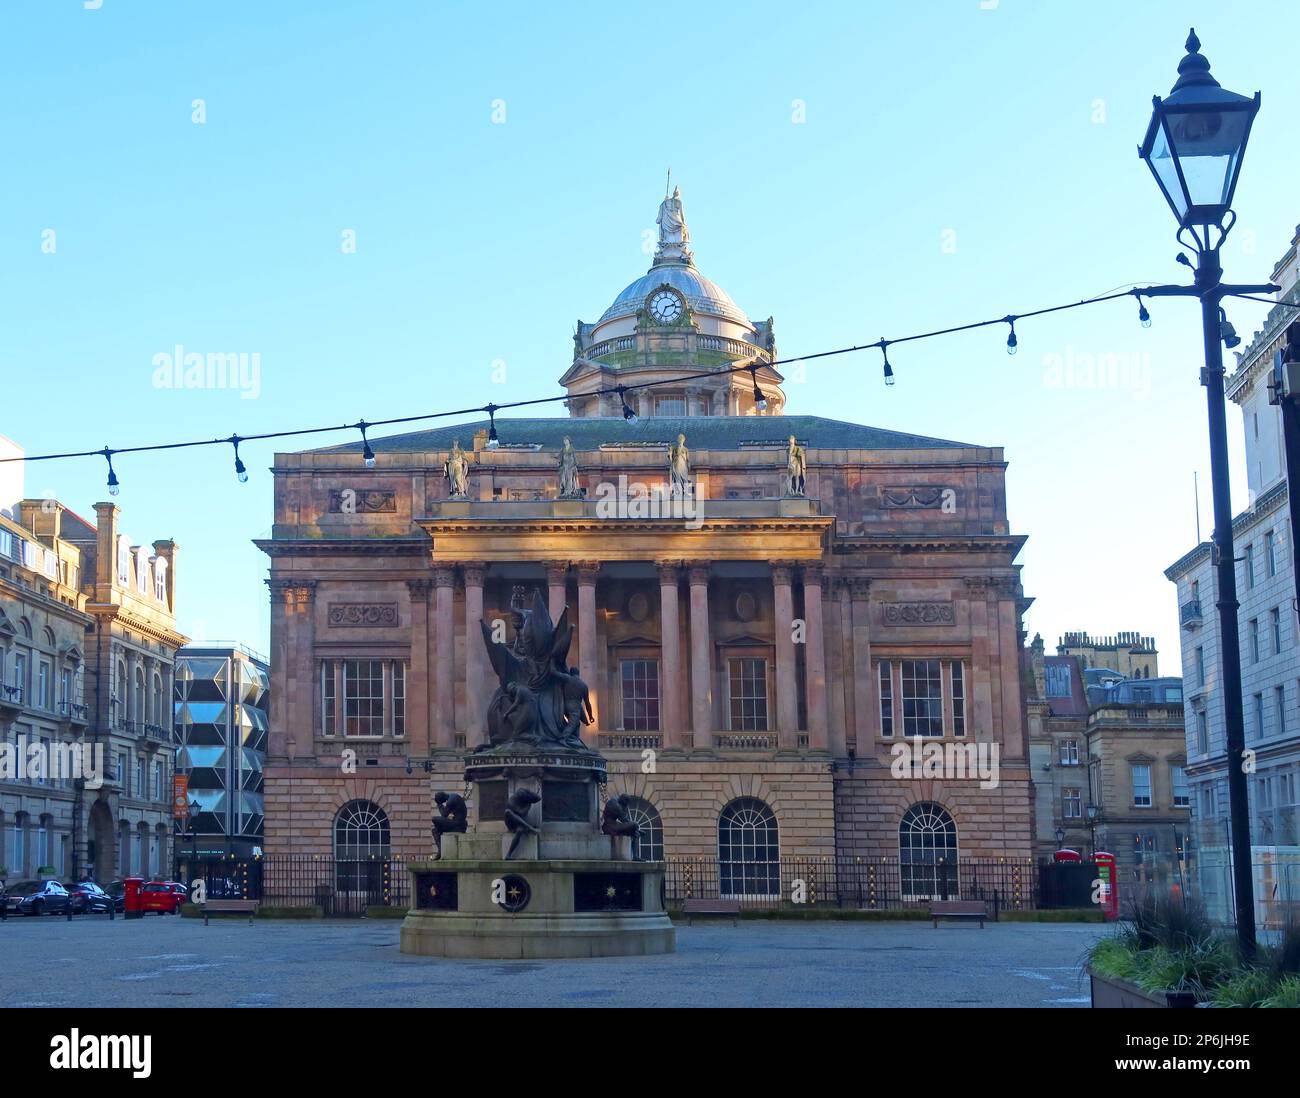 L'hôtel de ville géorgien tardif de Liverpool vu des drapeaux d'échange, Nelson Monument, statue, Liverpool, Merseyside, ANGLETERRE, ROYAUME-UNI, L2 3YL Banque D'Images